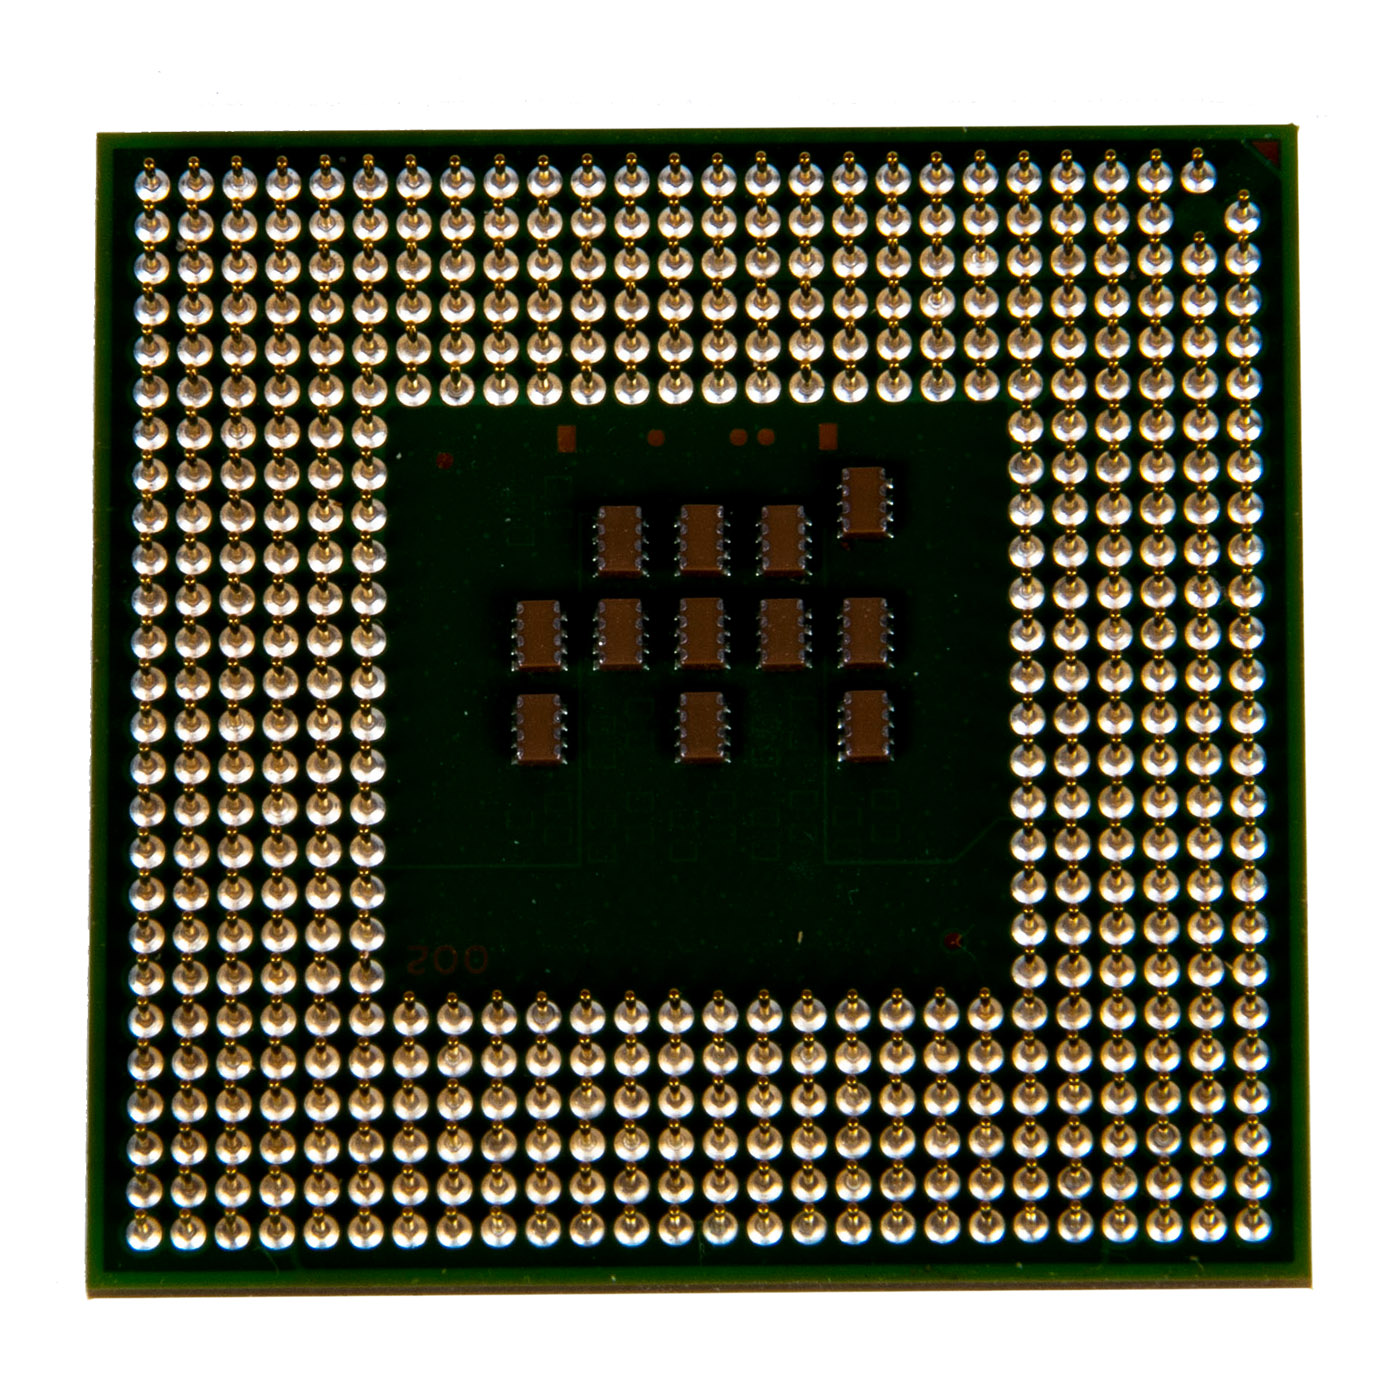 procesor-intel-pentium-m725-1-60-ghz-nr-fru-sl7eg